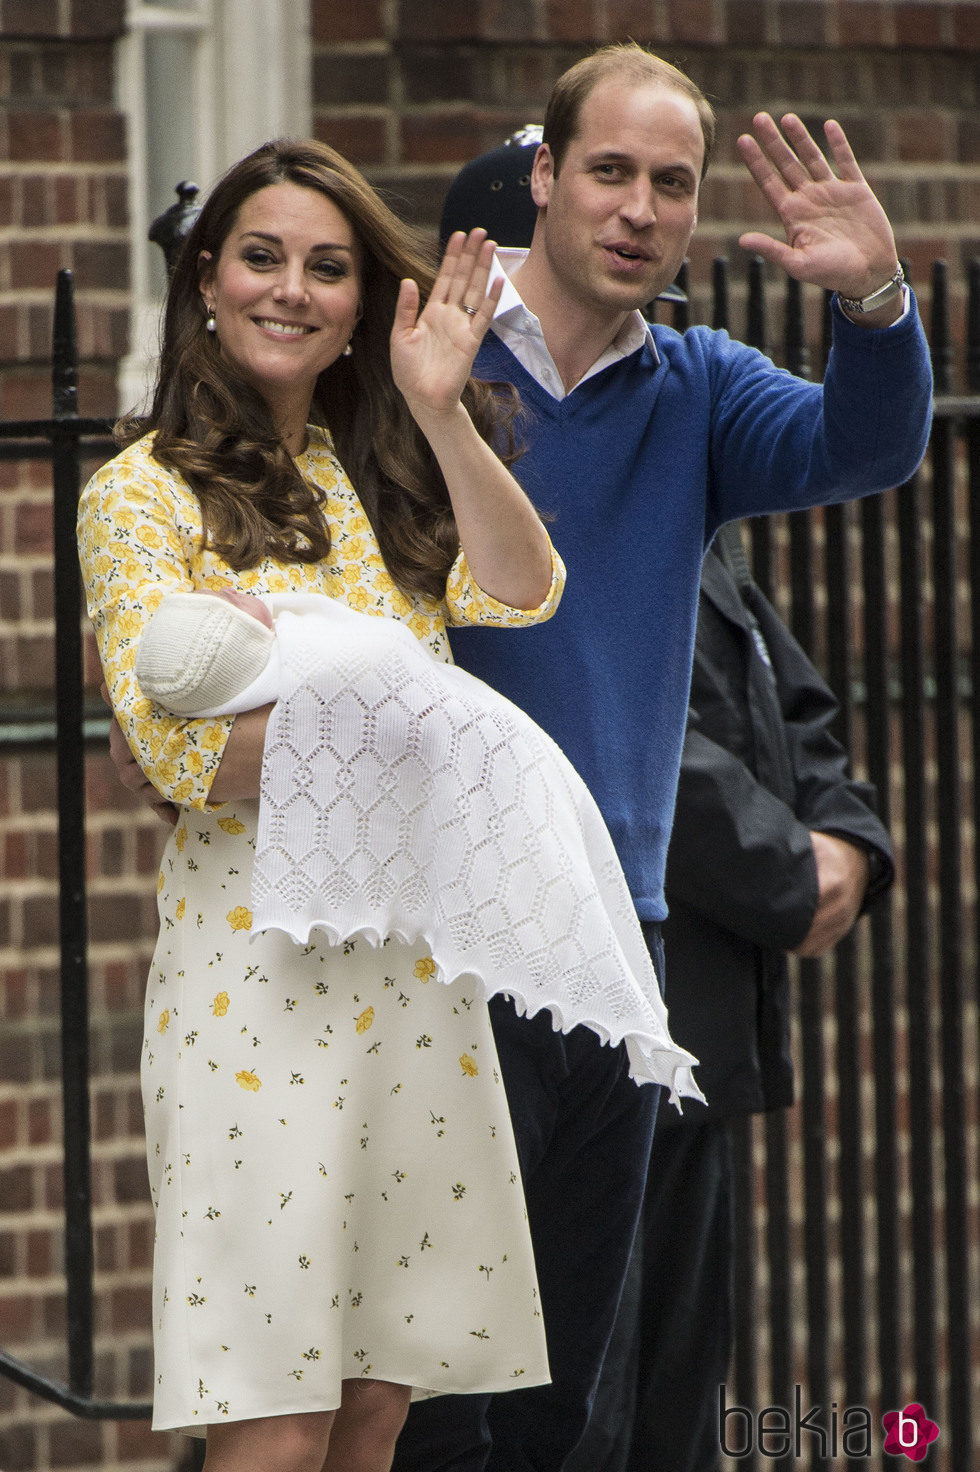 Los Duques de Cambridge saludando en la presentación de su hija la Princesa Carlota